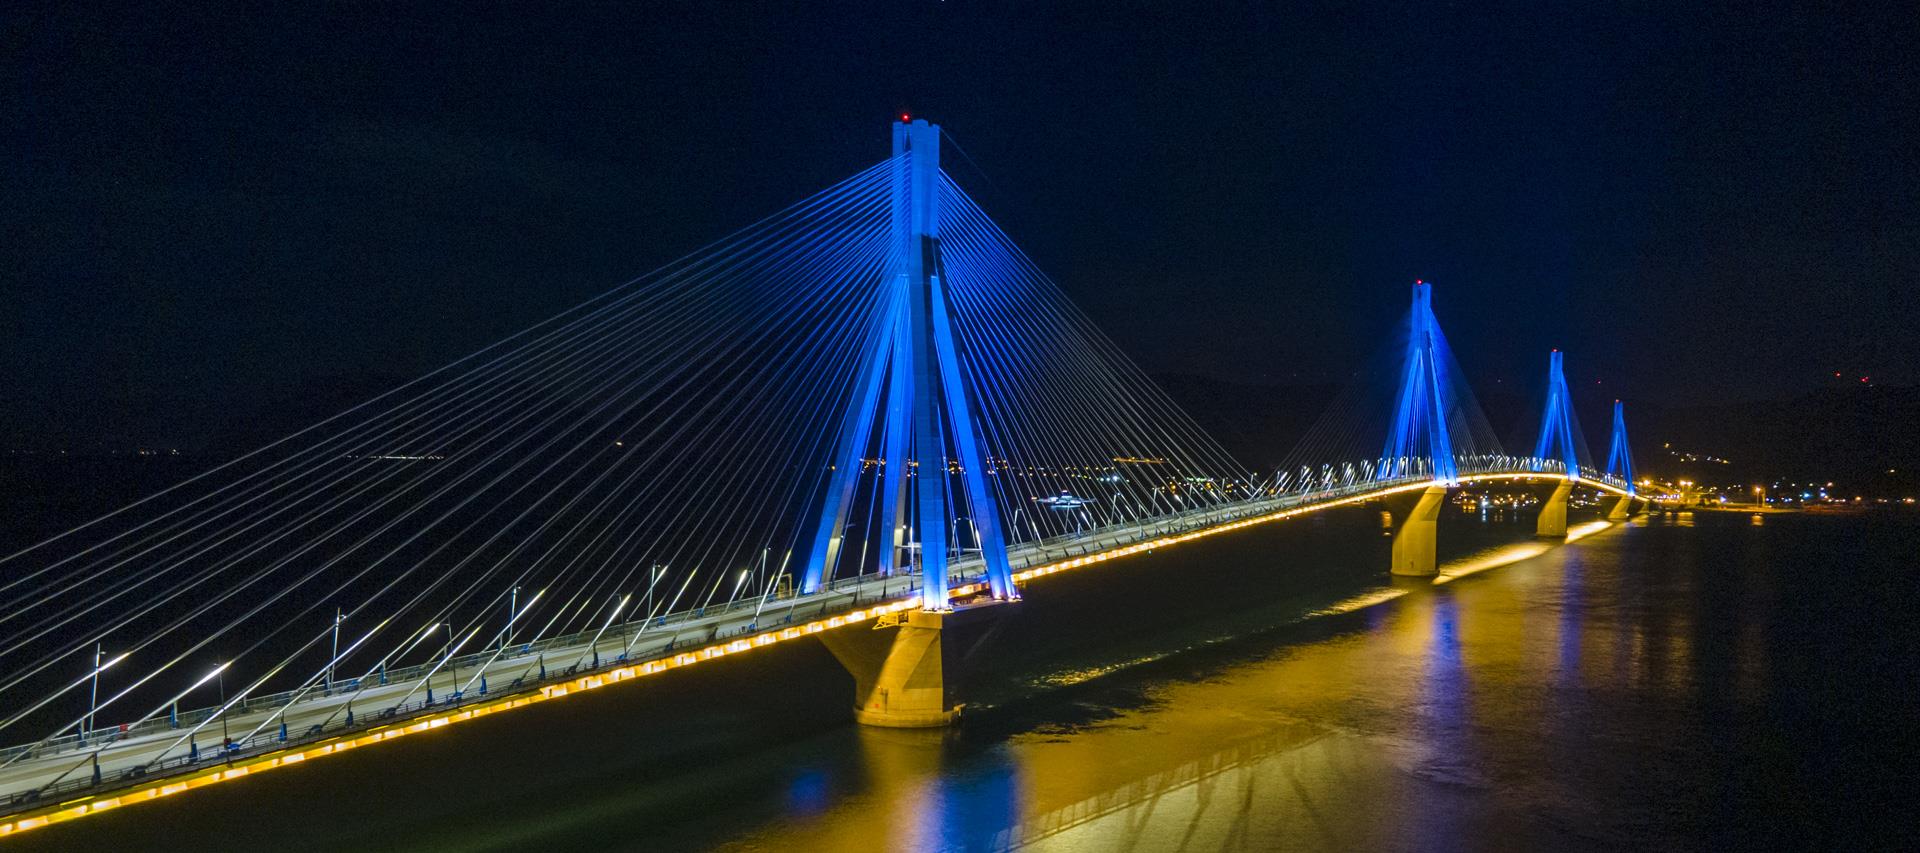 Η Γέφυρα Ρίου - Αντιρρίου σβήνει τα διακοσμητικά φώτα